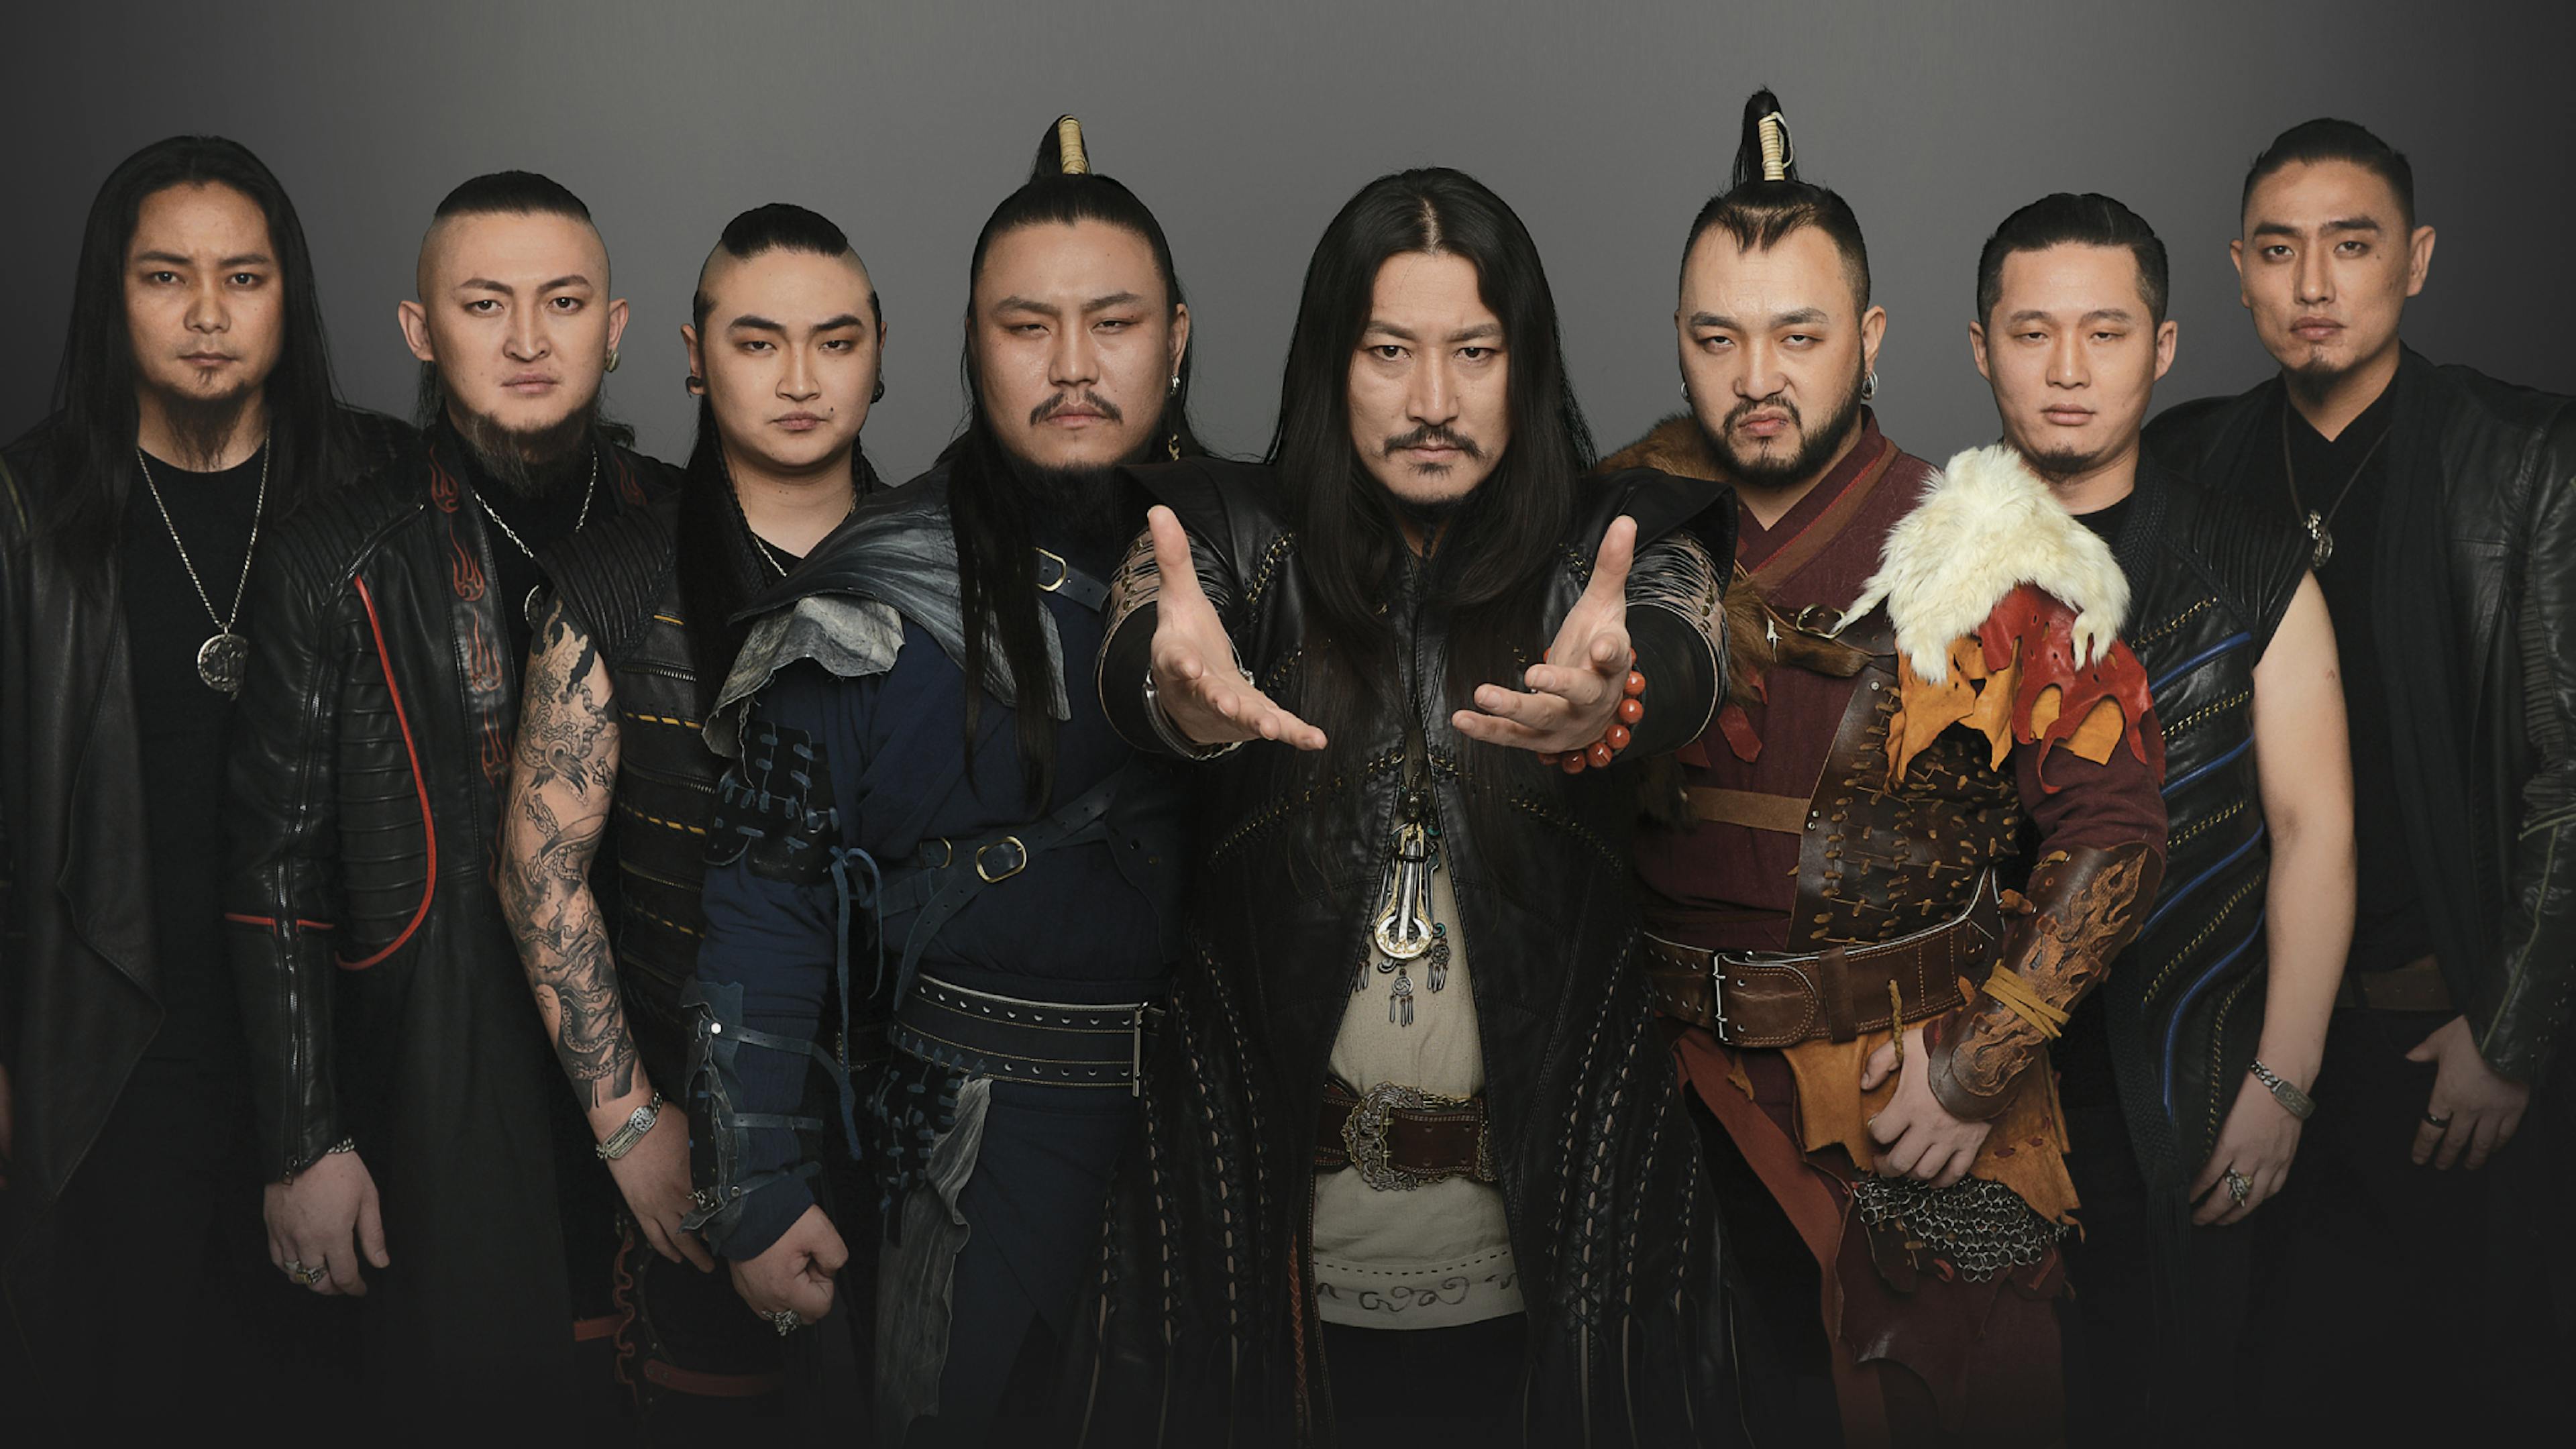 Mongolian rock outfit The HU announce UK tour